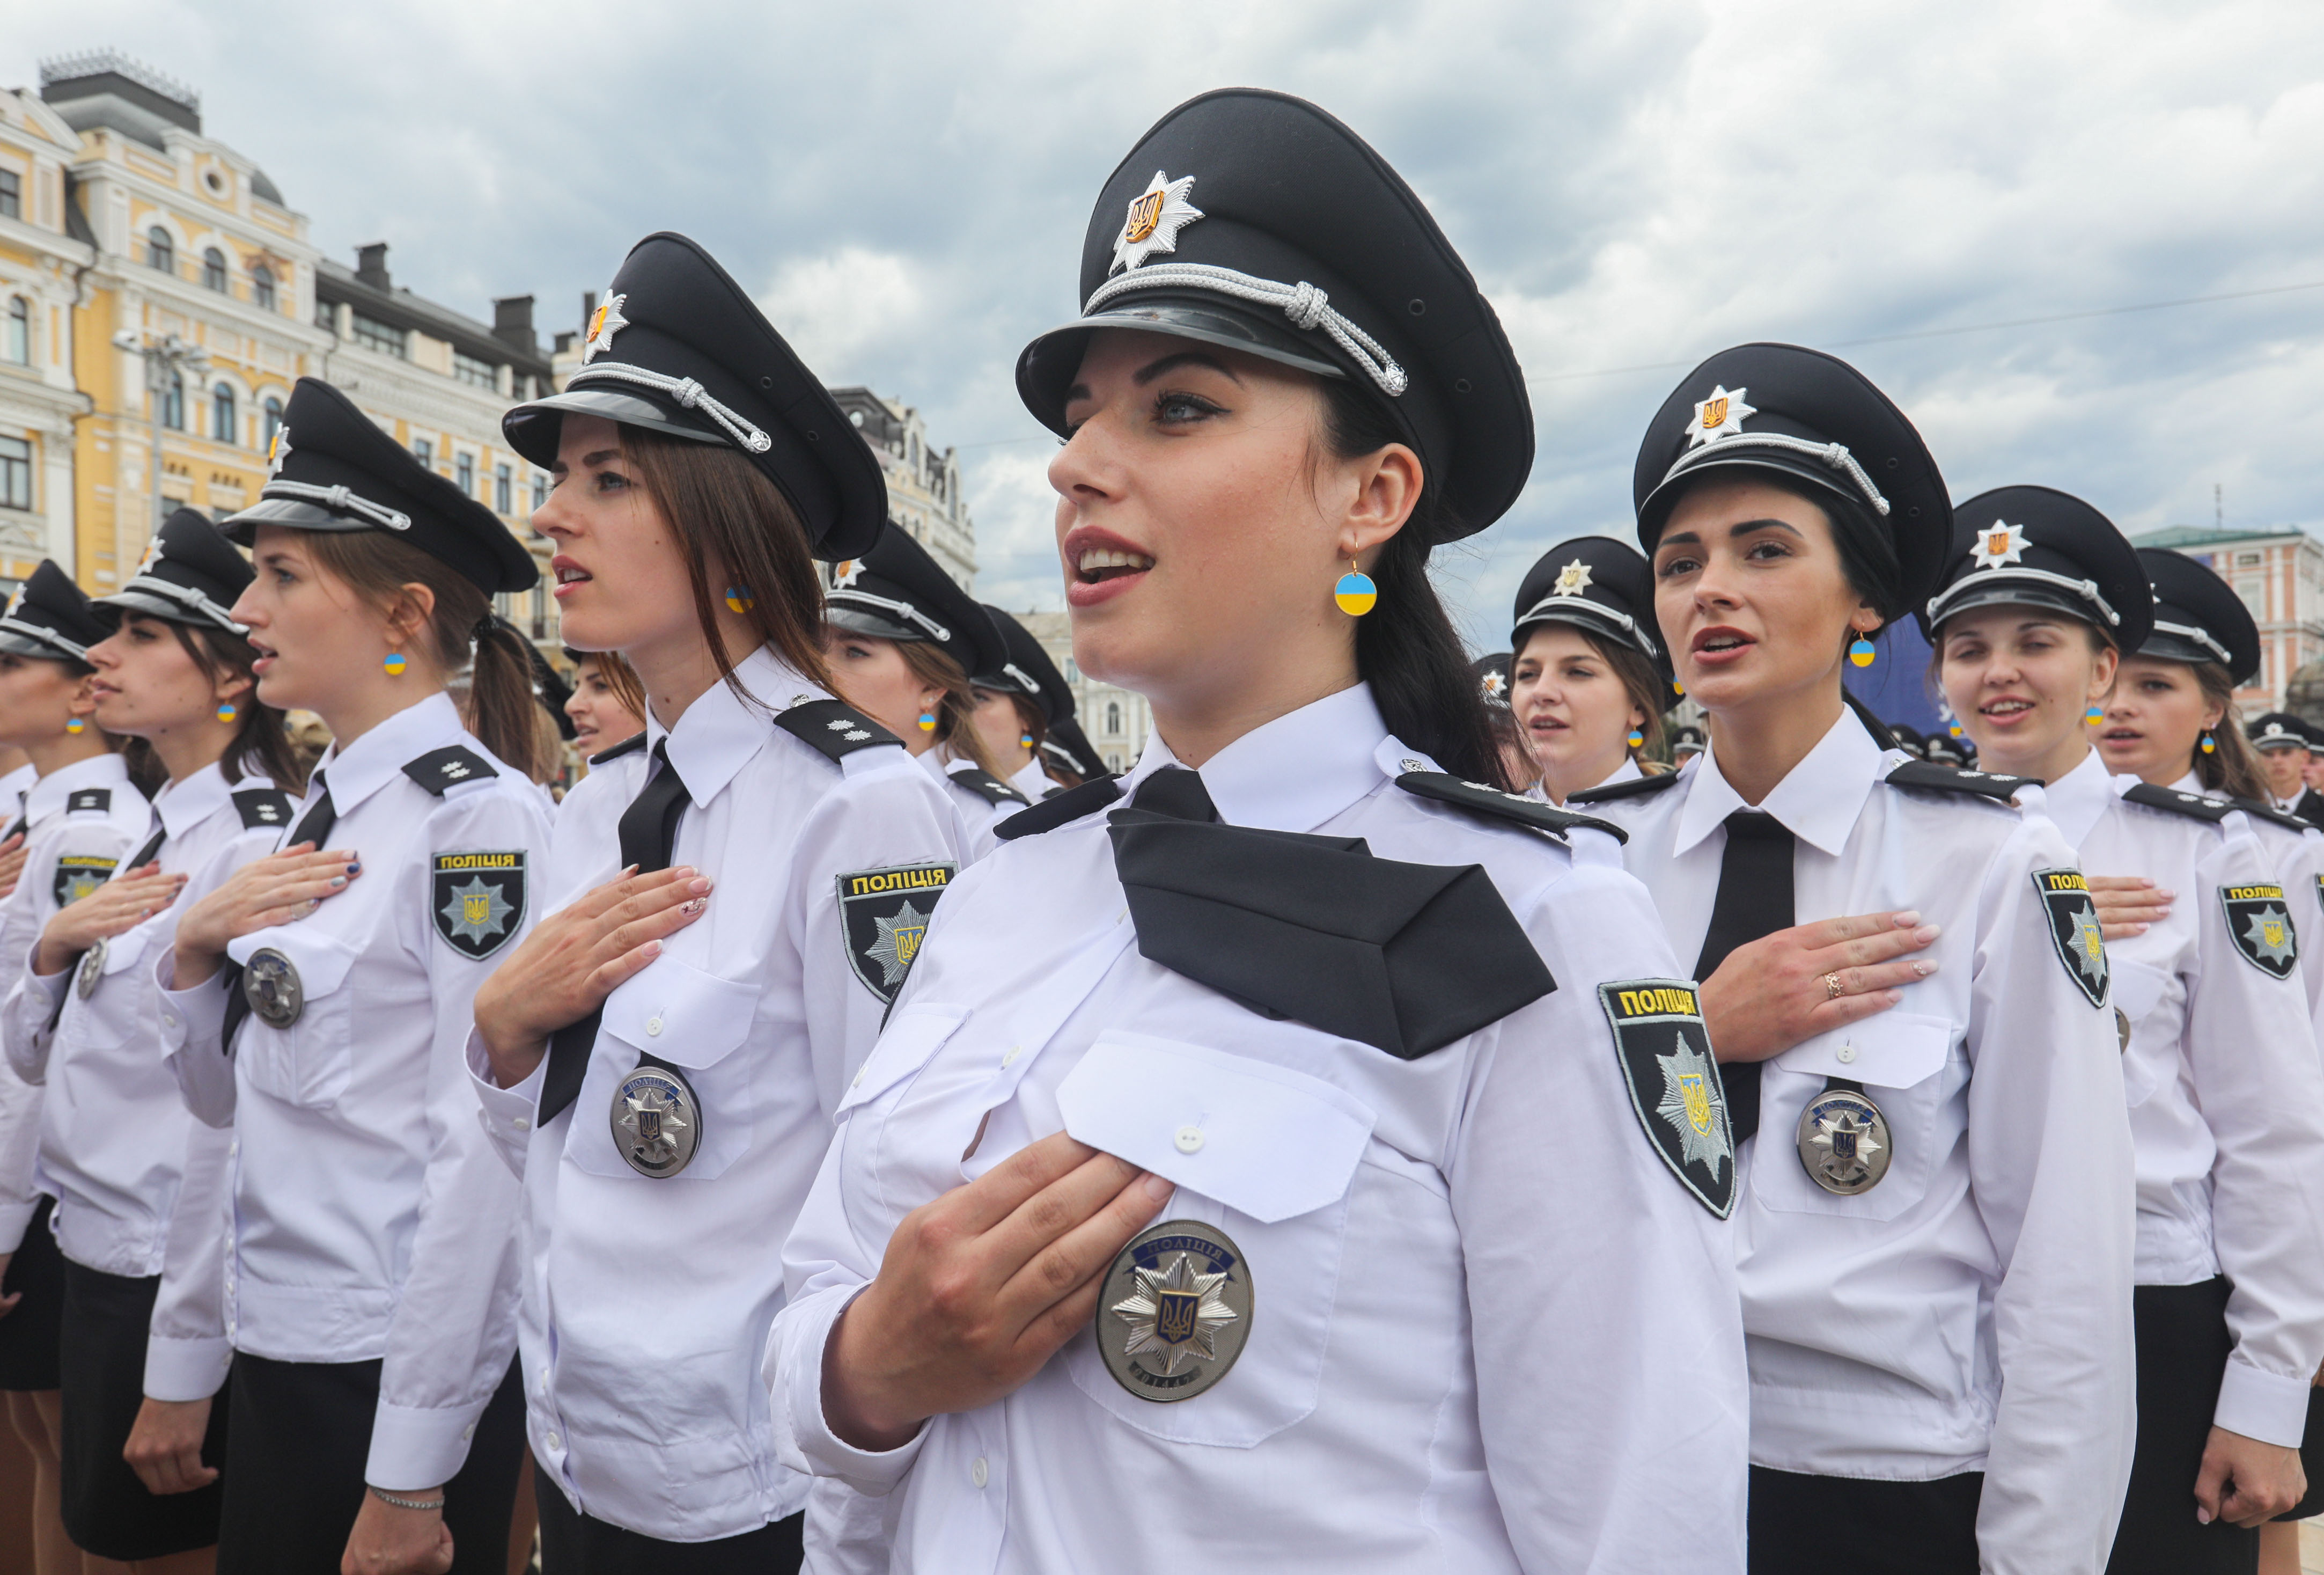 Нова патрульна поліція і поліція України дедалі менше нагадують стару, радянського стилю міліцію. Фото Михайла Палінчака 